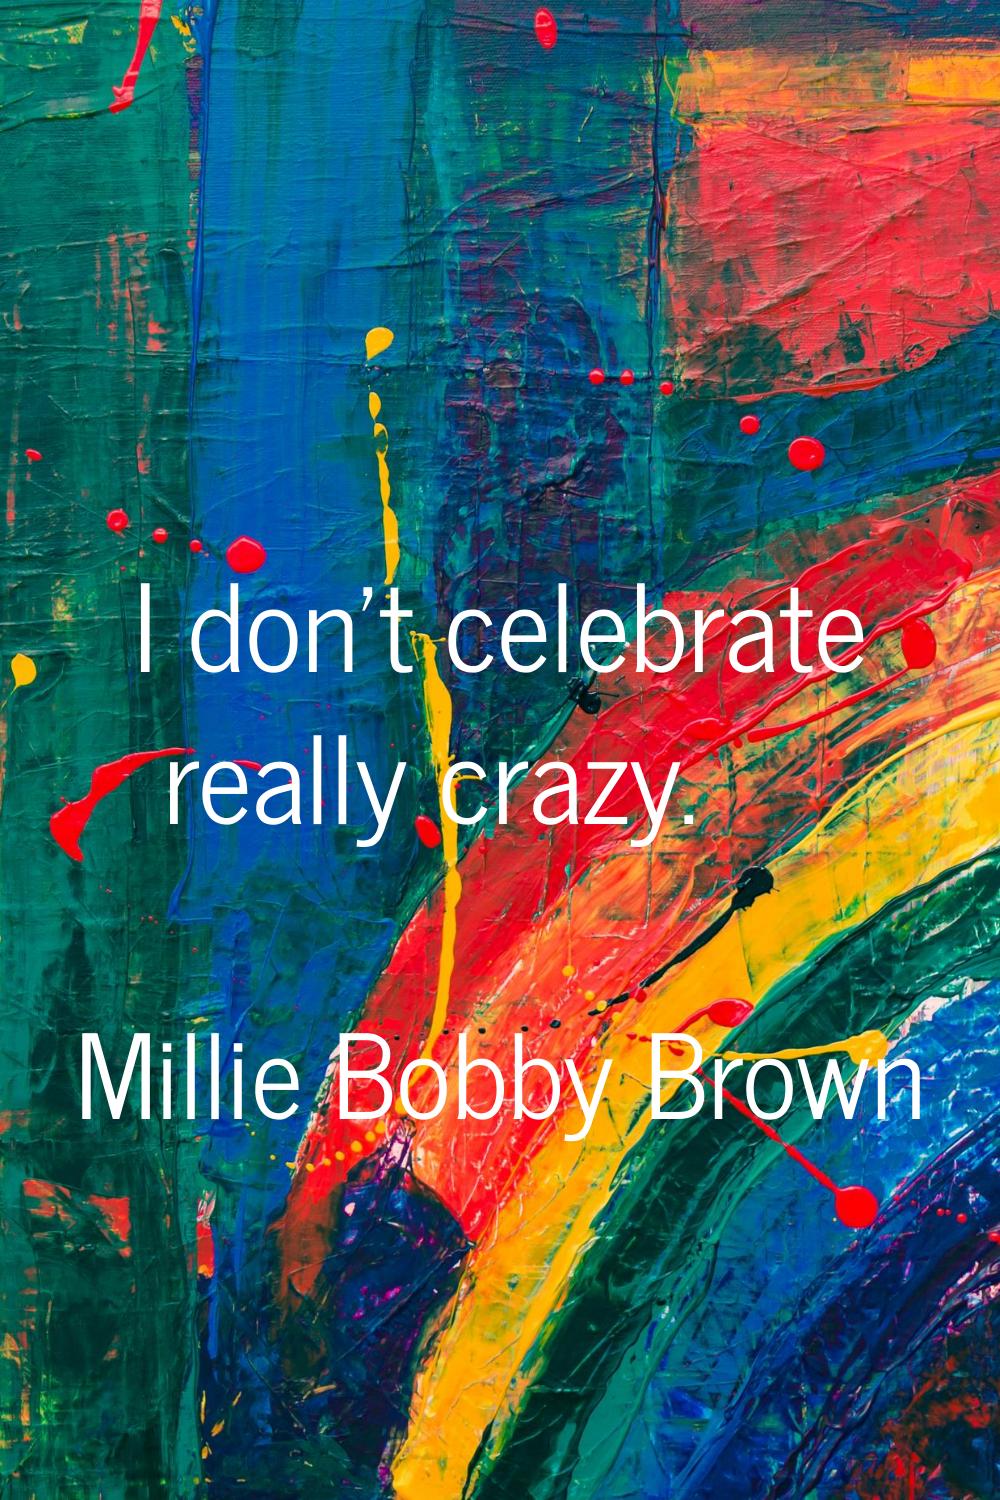 I don't celebrate really crazy.